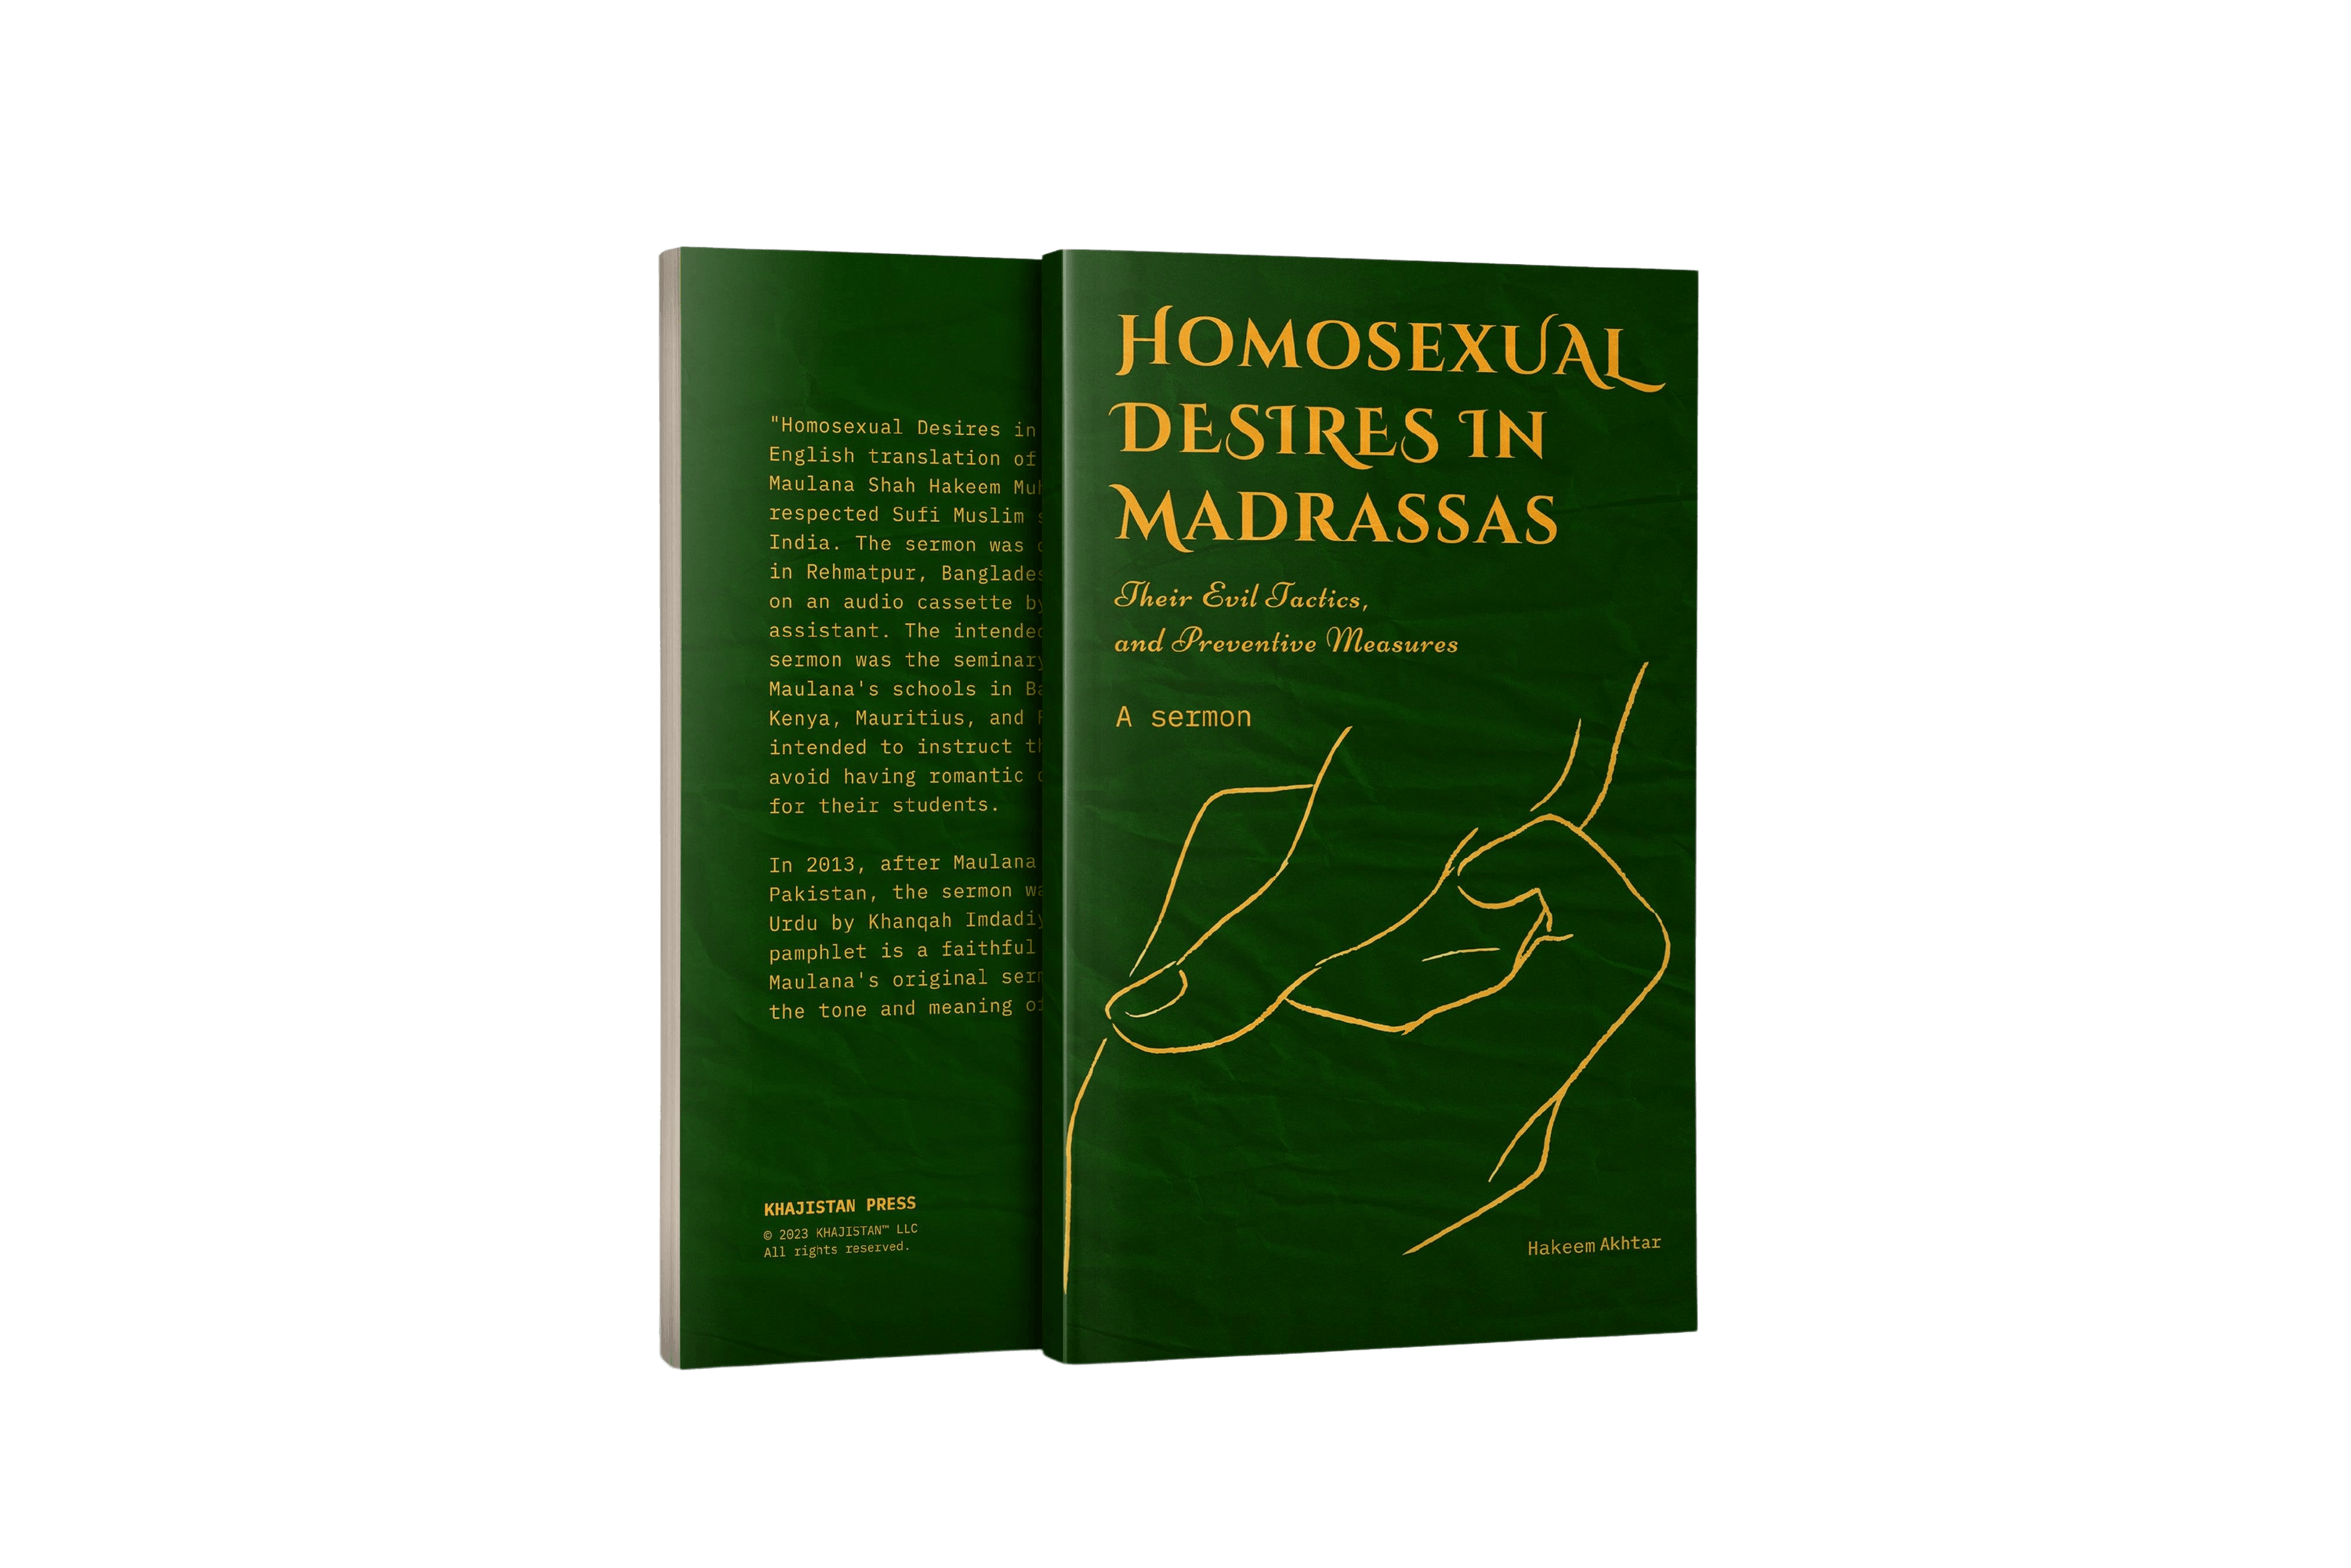 Homosexual Desires in Madrassas KHAJISTAN